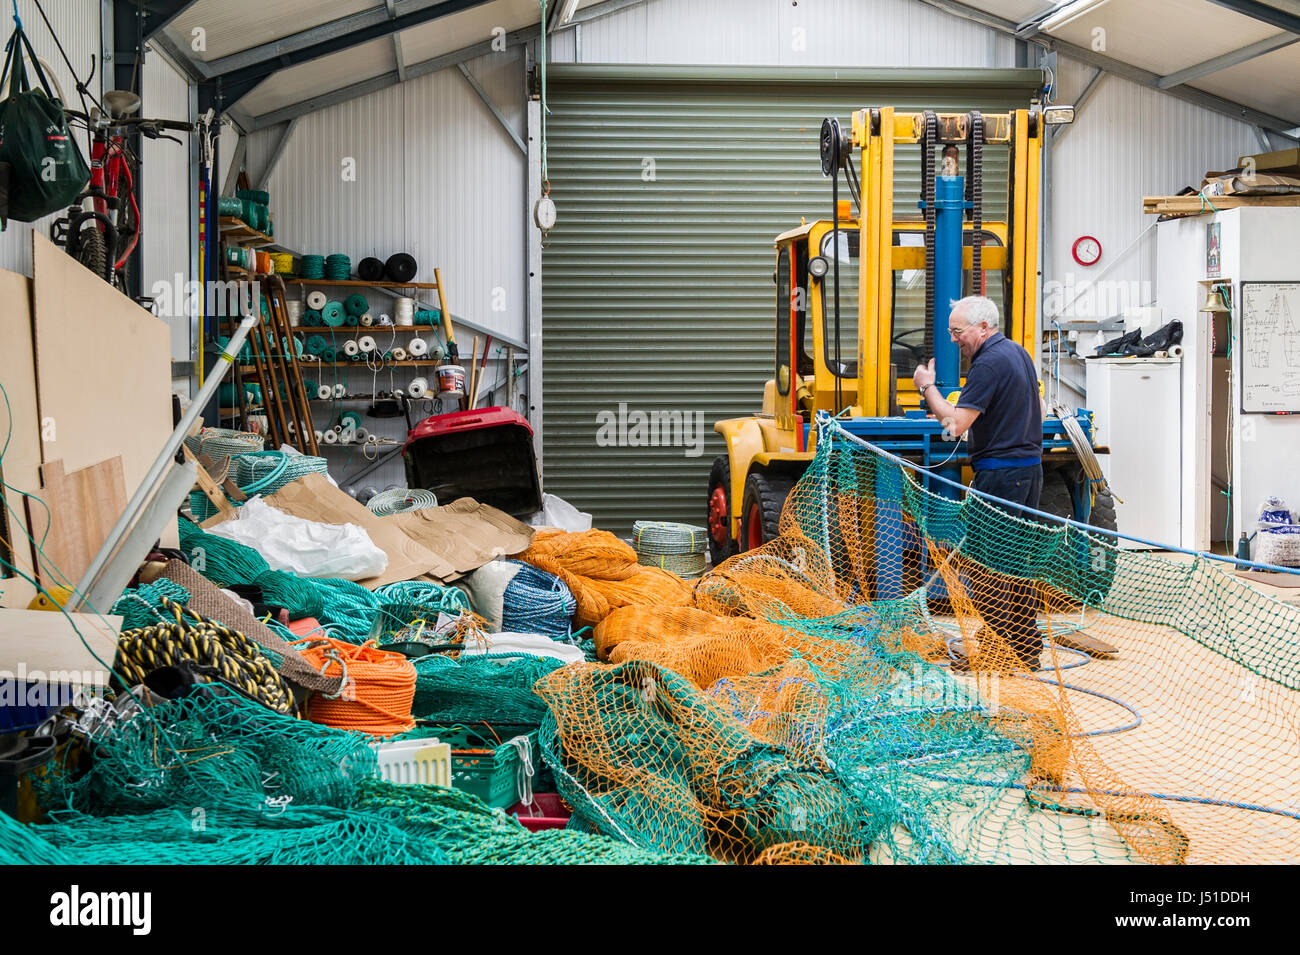 Red de pesca maker hace una pesca comercial neta de un arrastrero en su cobertizo en Irlanda con espacio de copia. Foto de stock